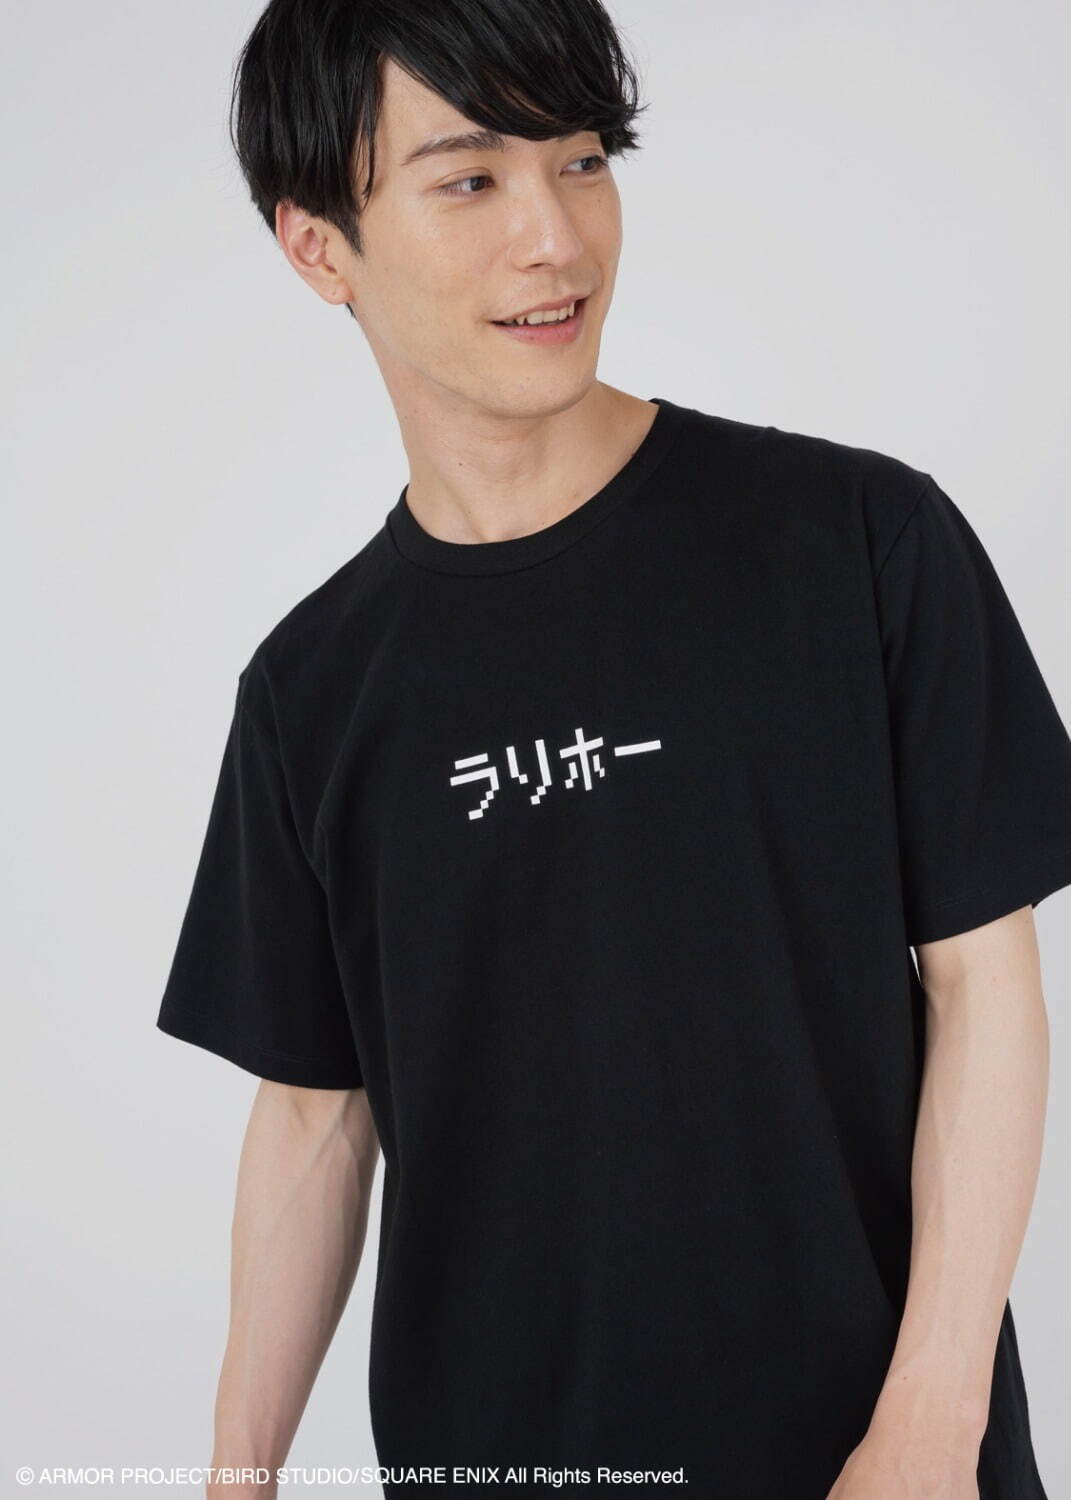 「ドラゴンクエスト DQ+g Tシャツ ラリホー」2,500円